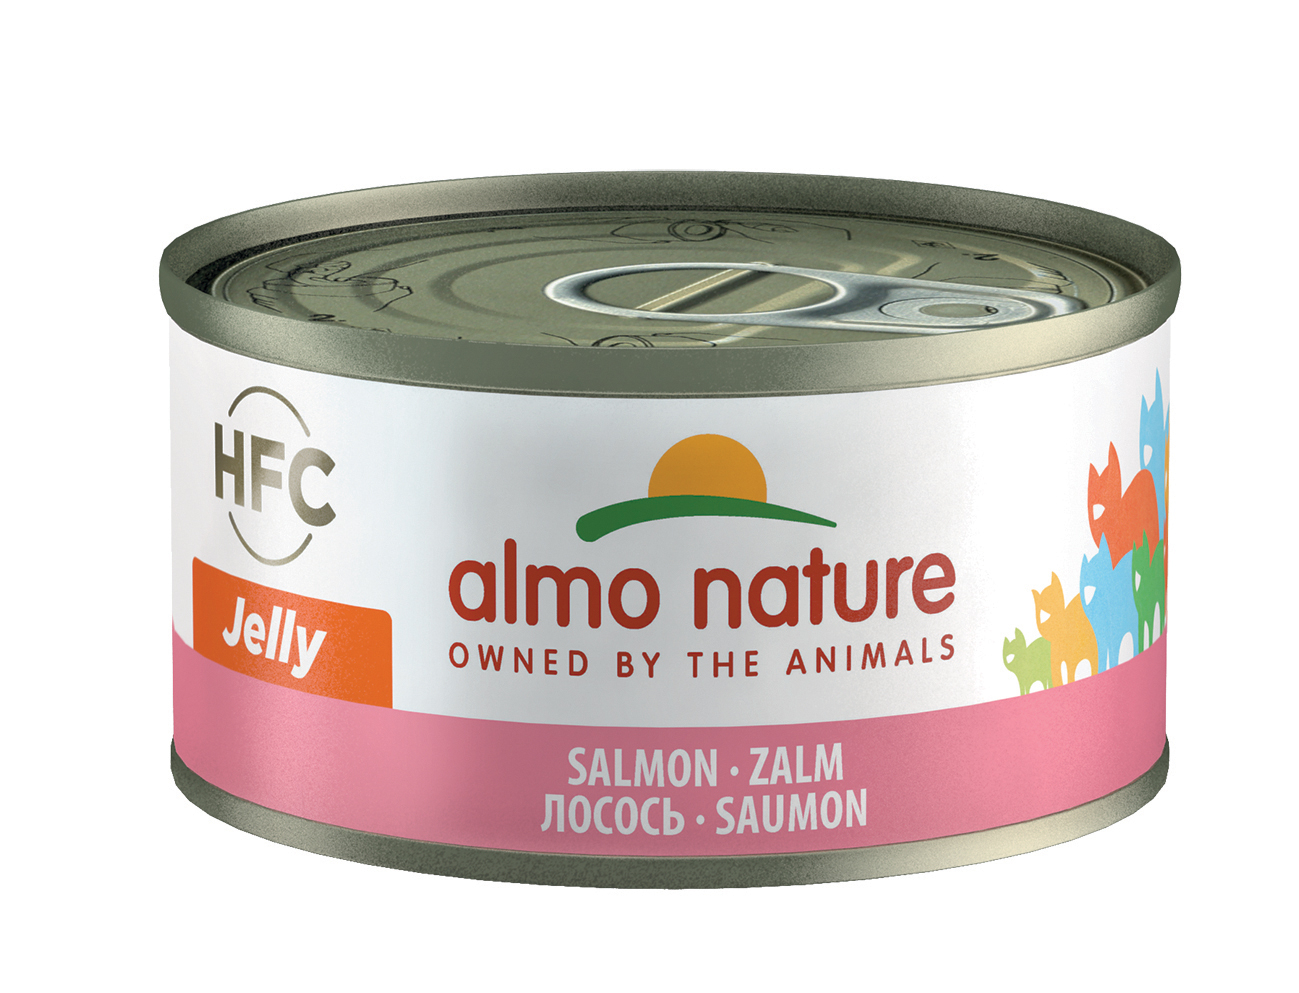 фото Консервы для кошек almo nature hfc jelly, лосось, 70г